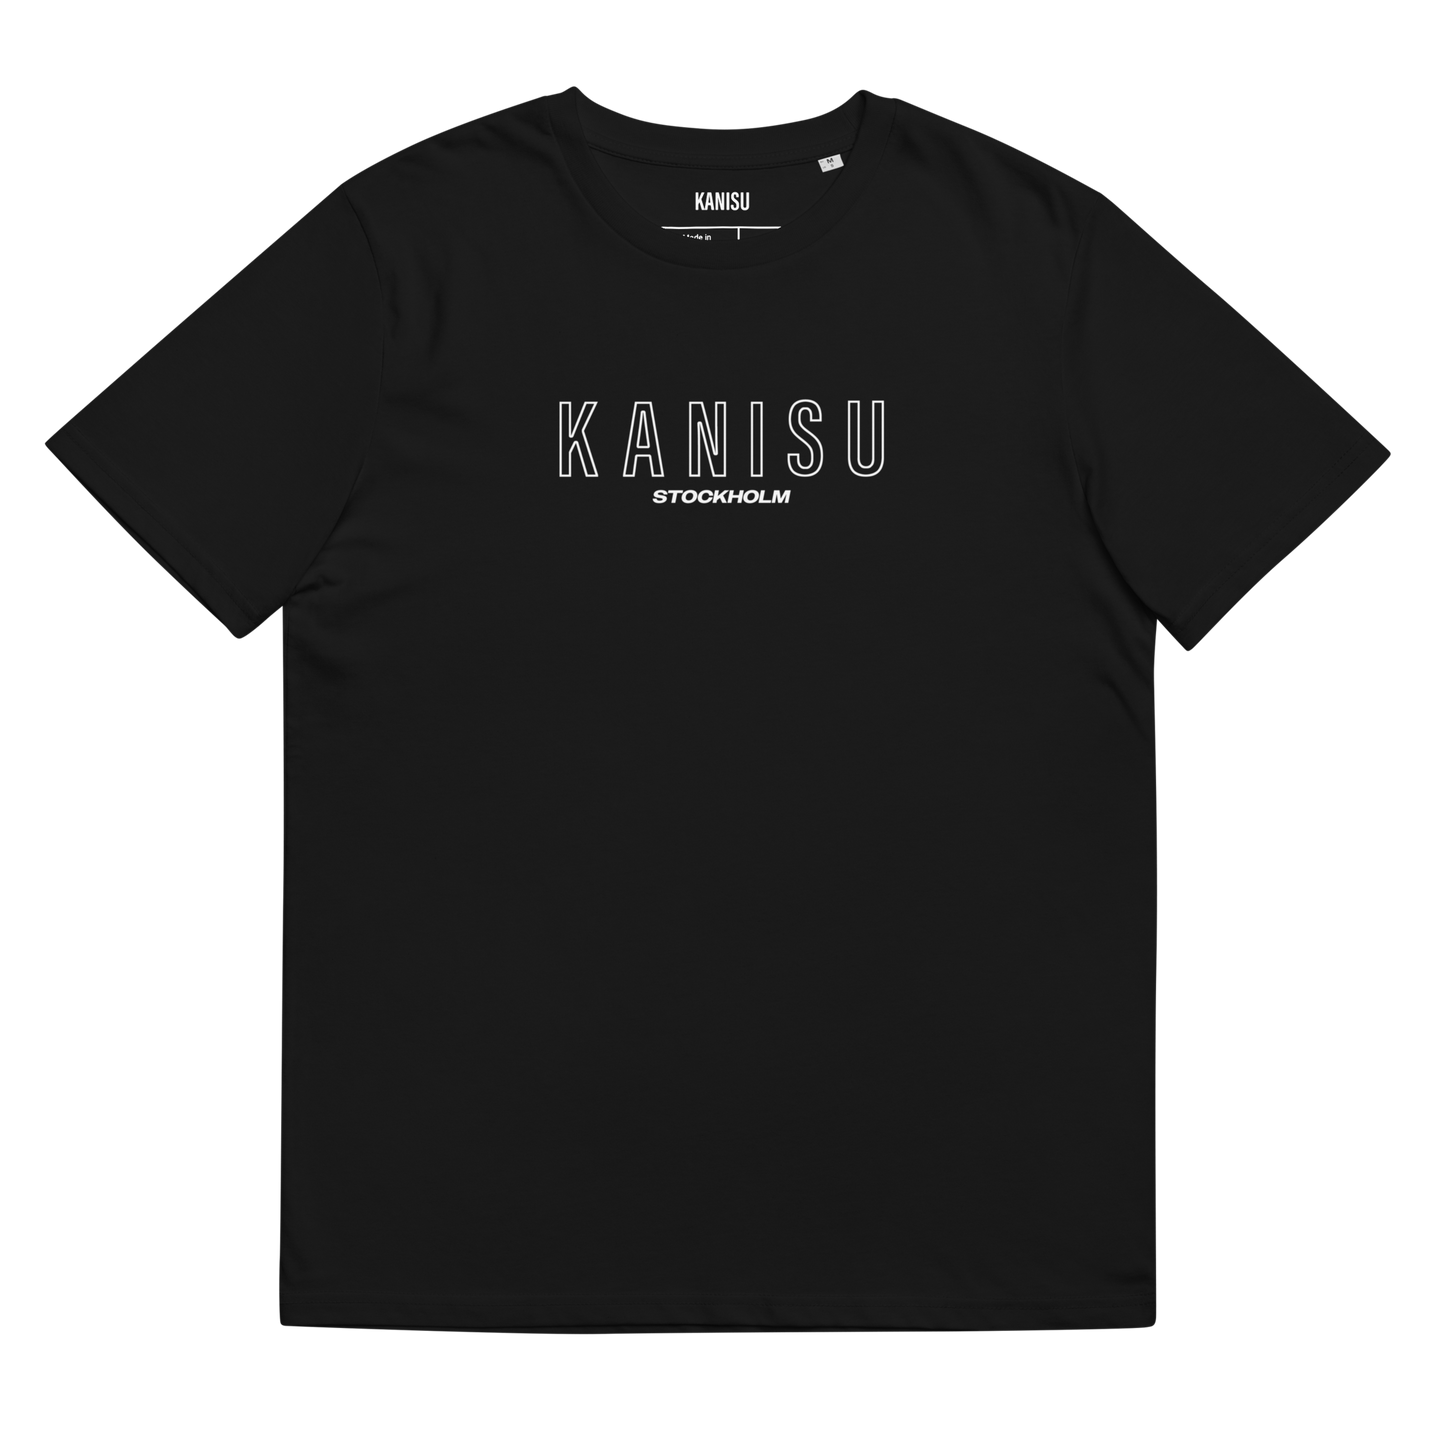 Black Kanisu Tshirt - Stockholm